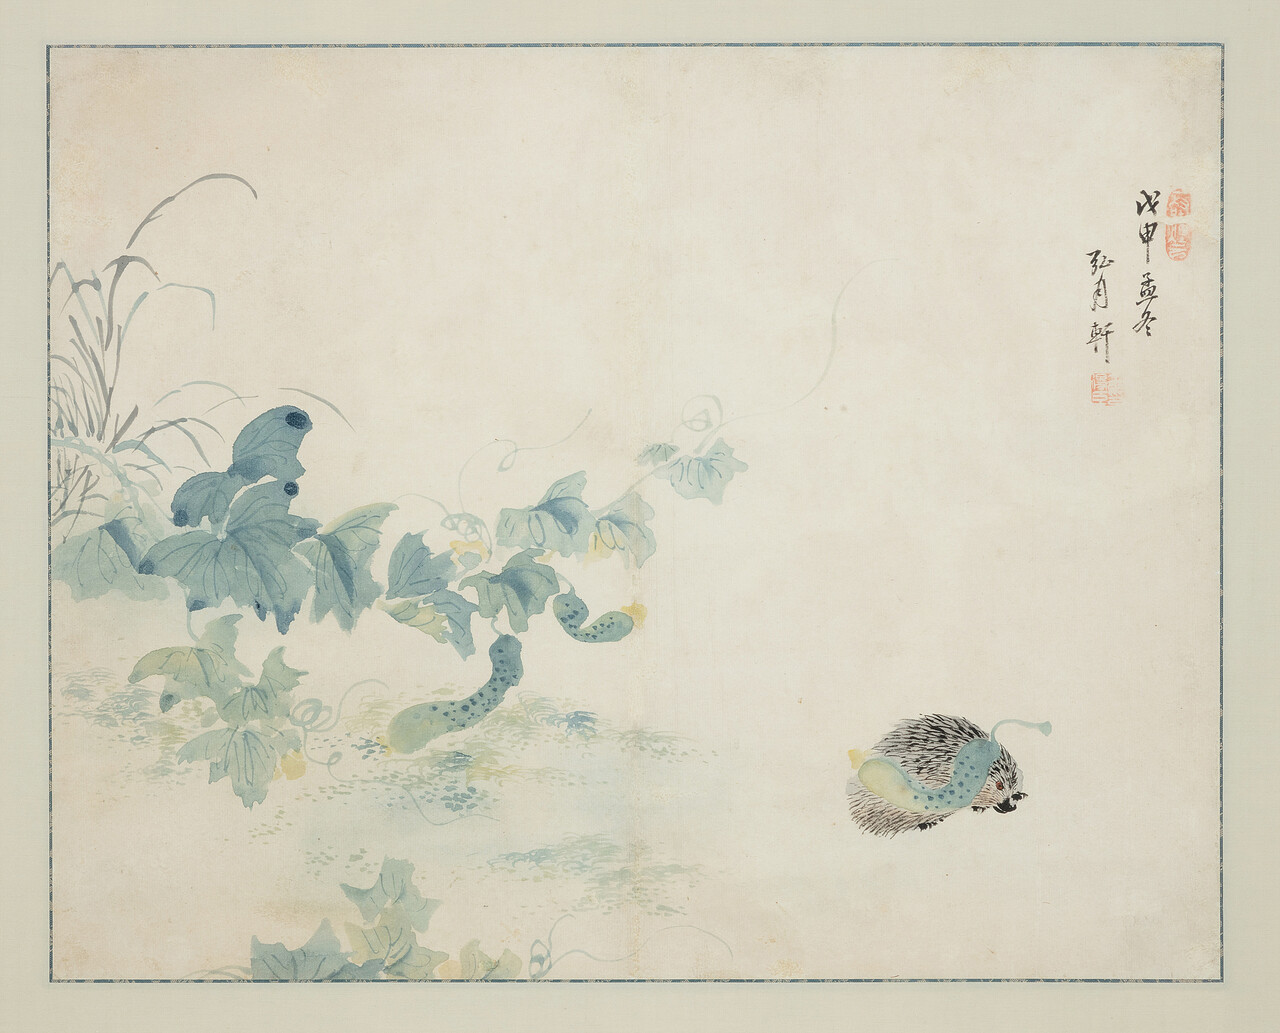 긍재 김득신(兢齋 金得臣, 1754~1822) 작 ‘자위부과도(刺蝟負瓜圖)’. 사진 제공 국립민속박물관.